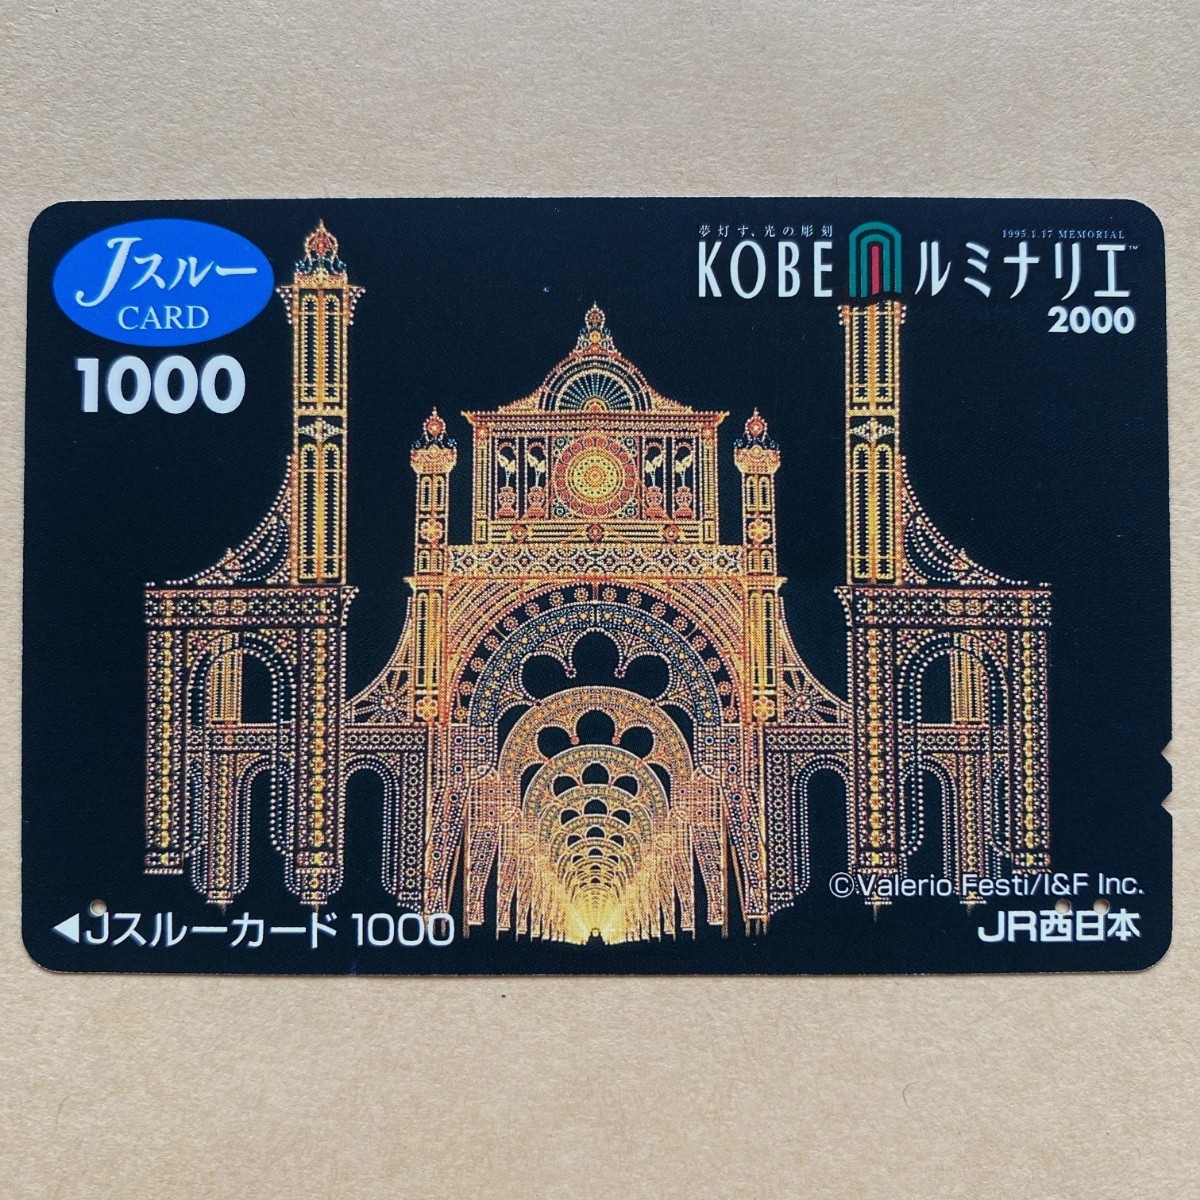 [ использованный ] Js Roo карта JR запад Япония Kobe ruminalie2000